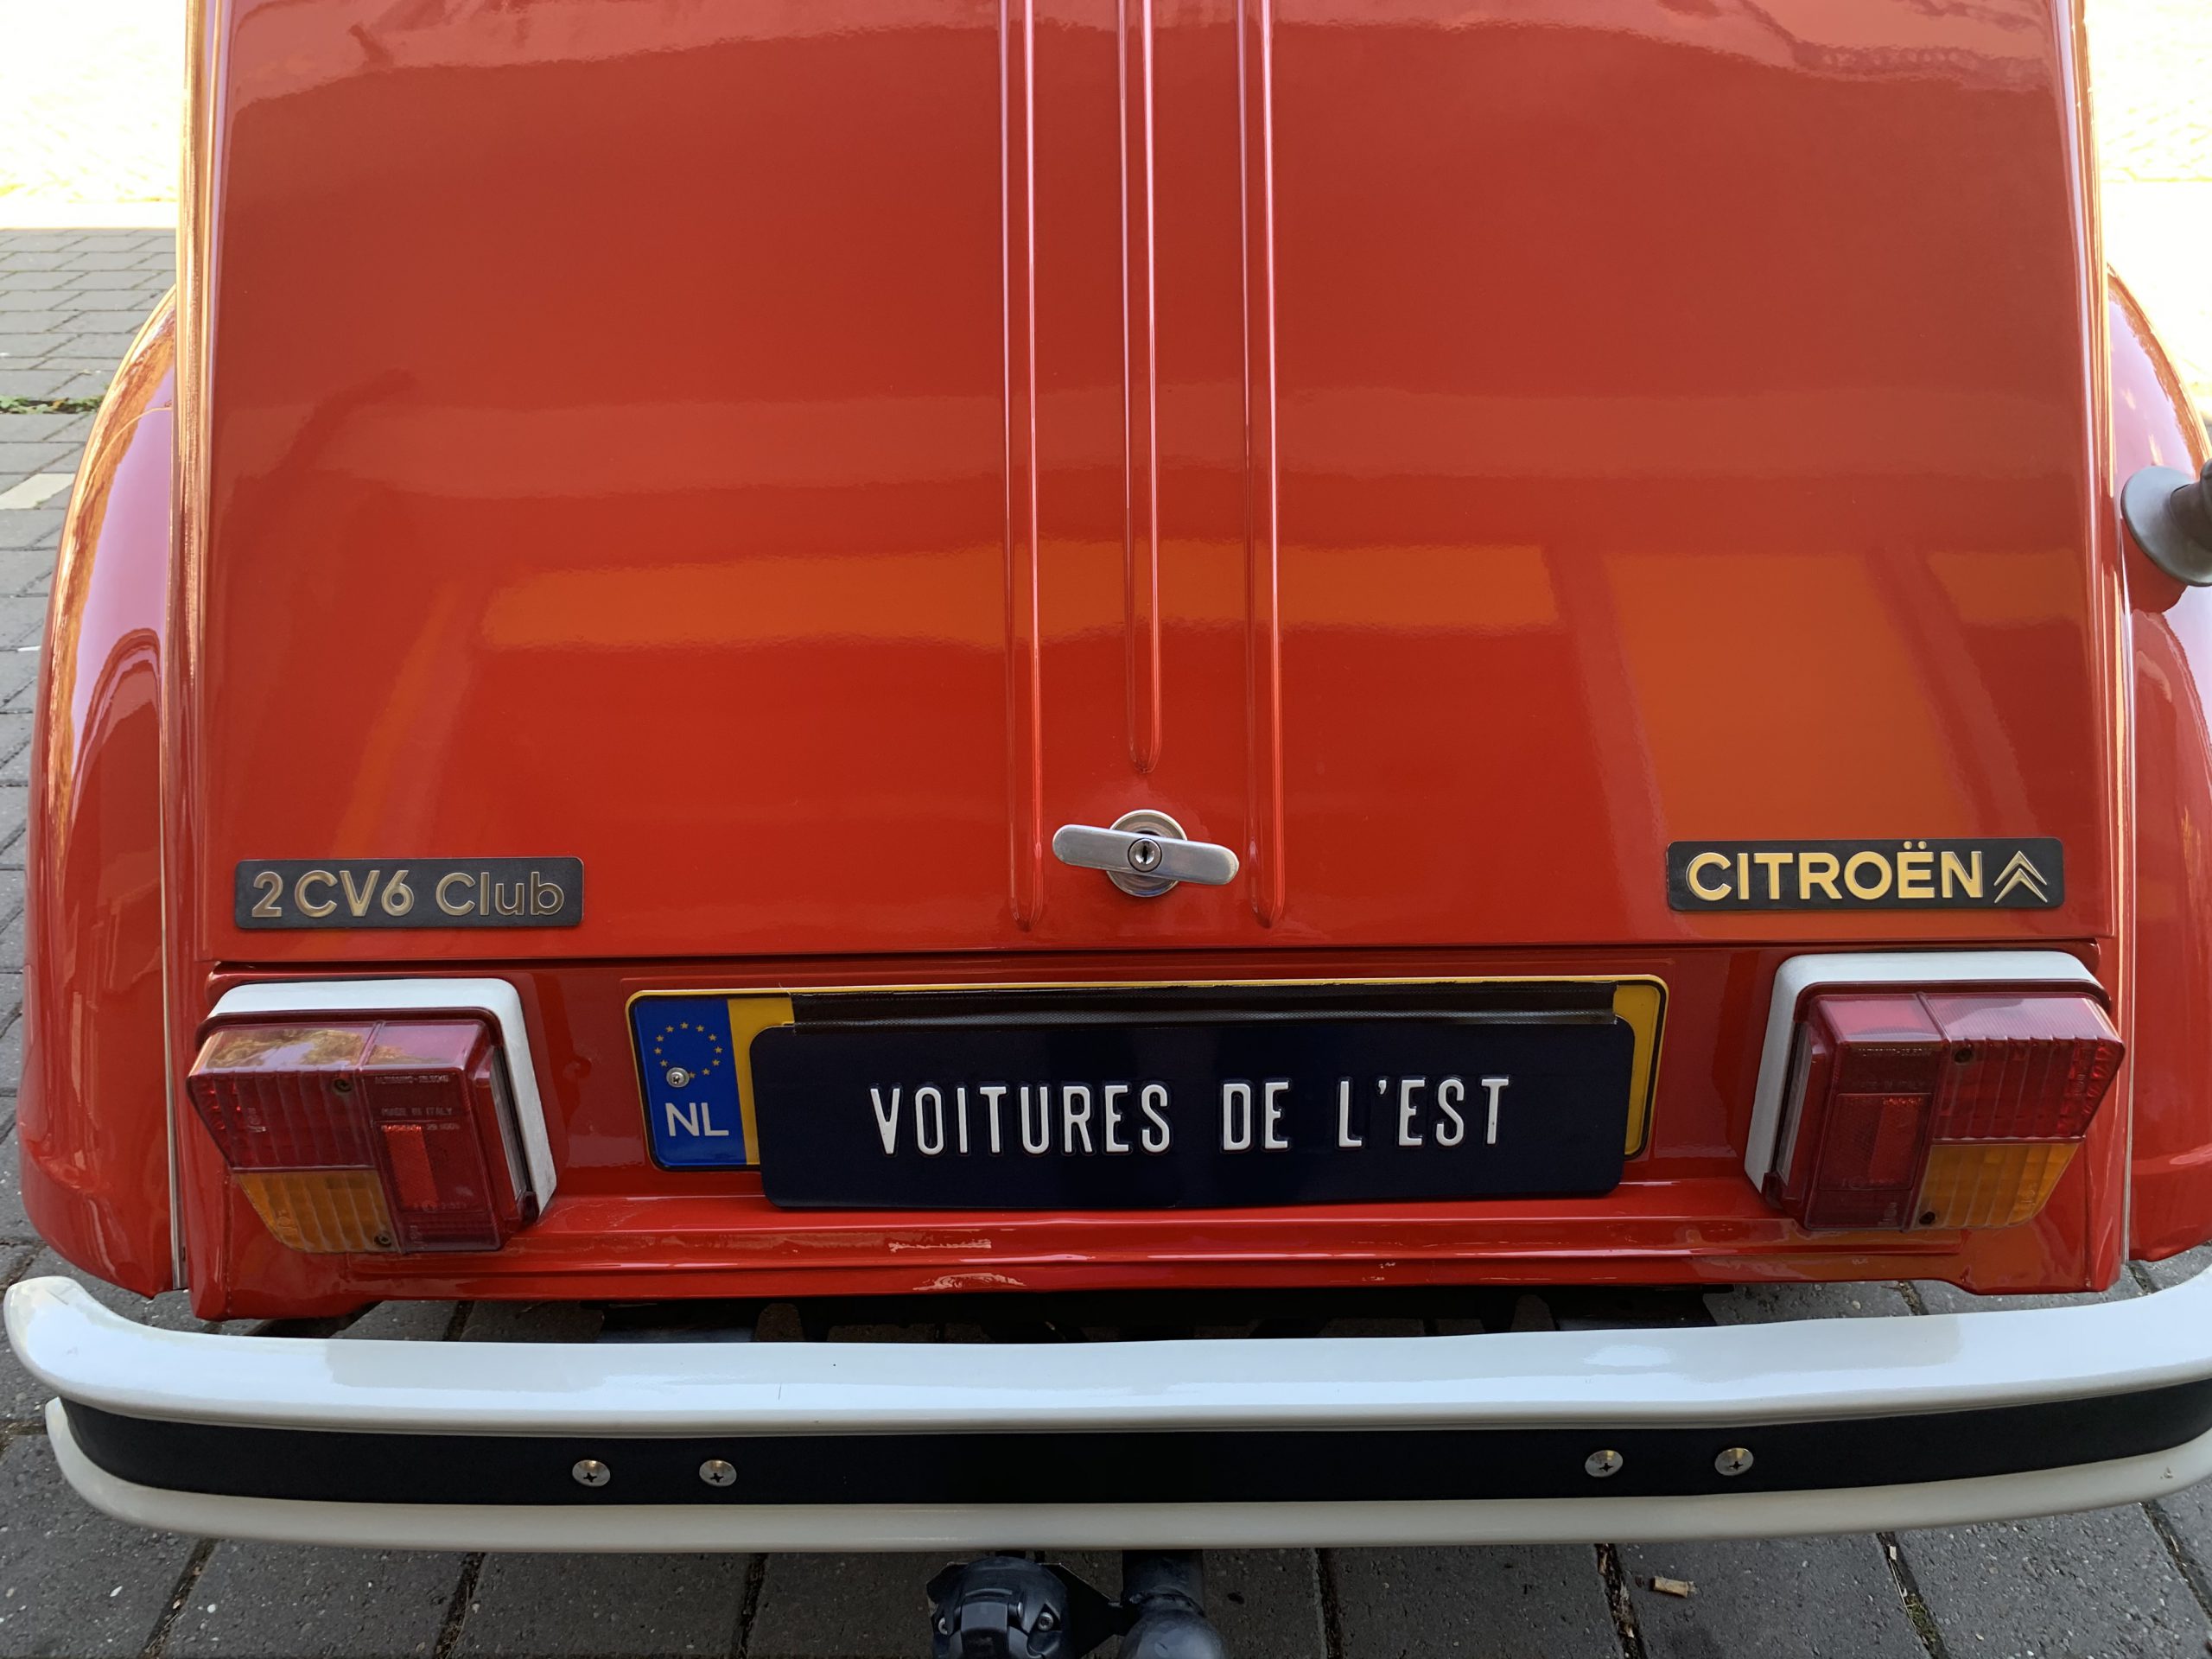 Citroën 2CV6 Club